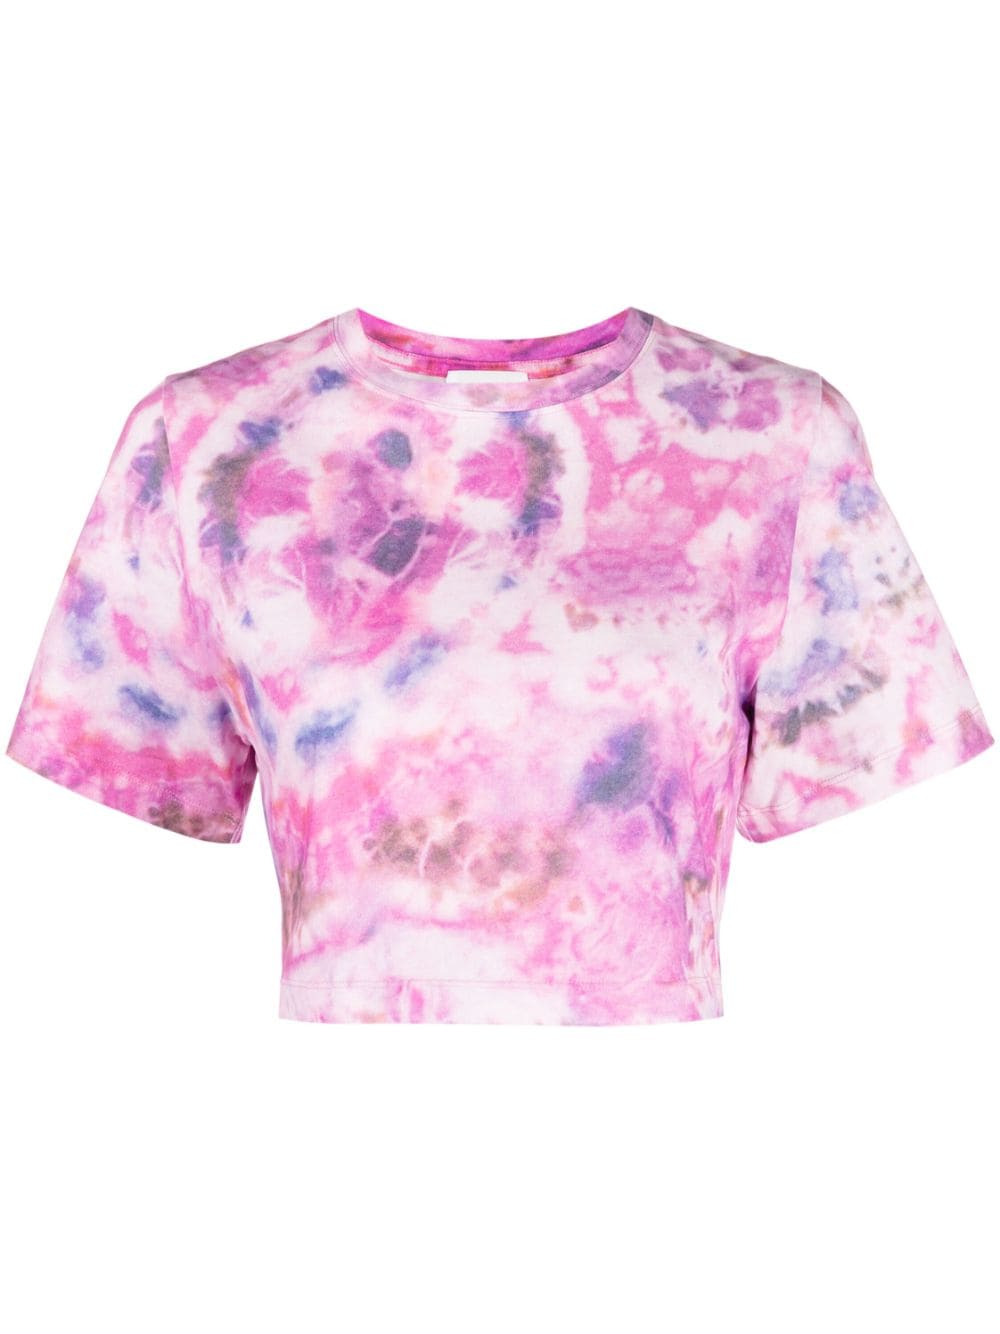 MARANT ÉTOILE tie-dye cropped cotton T-shirt - Pink von MARANT ÉTOILE